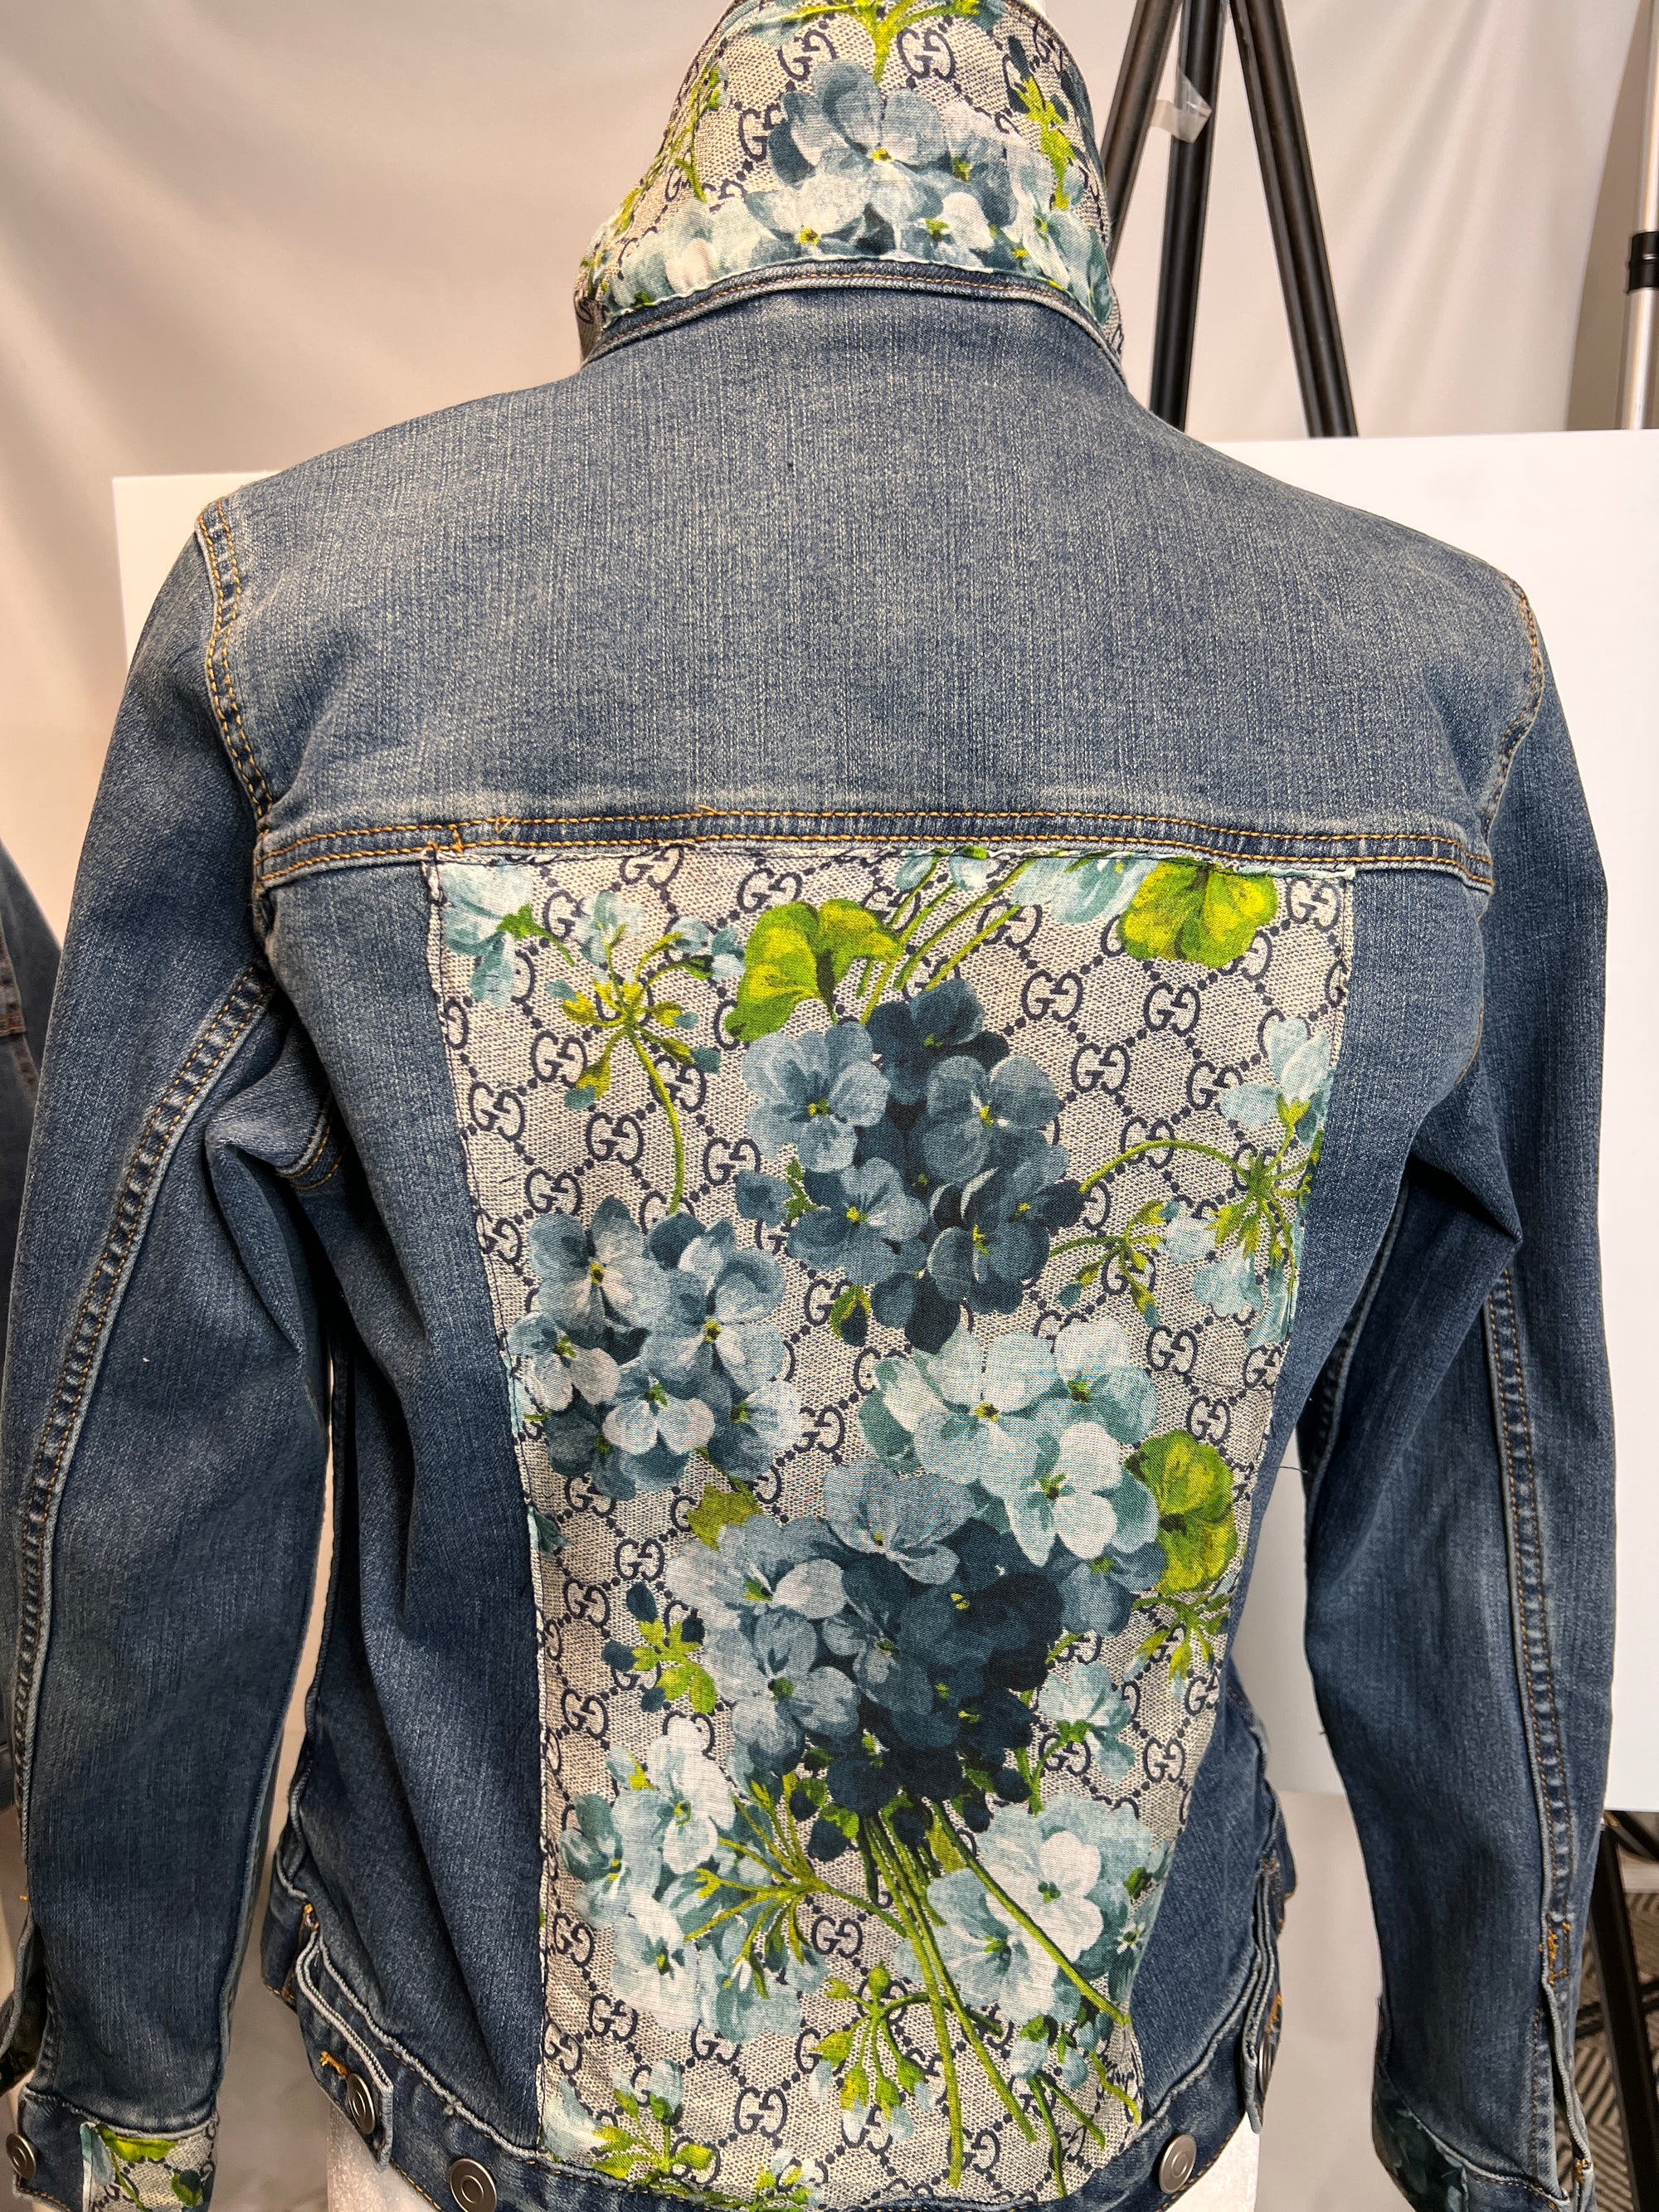 Designer Scarves on Denim Jacket